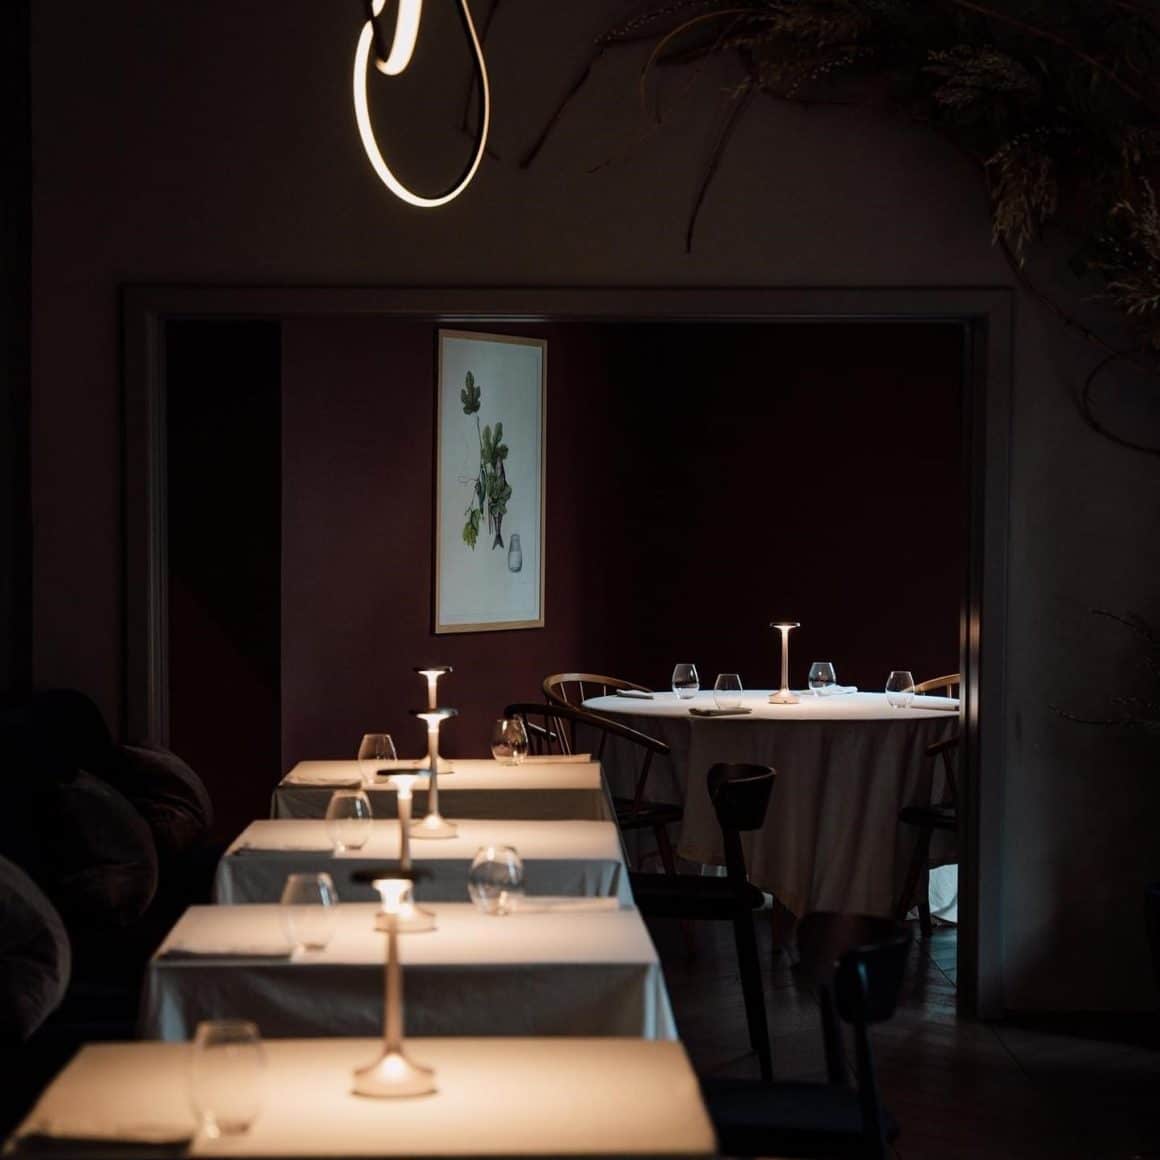 Sir de mese elegante, in decor minimalist, de fine dining, la Kane București. Cină-experiență